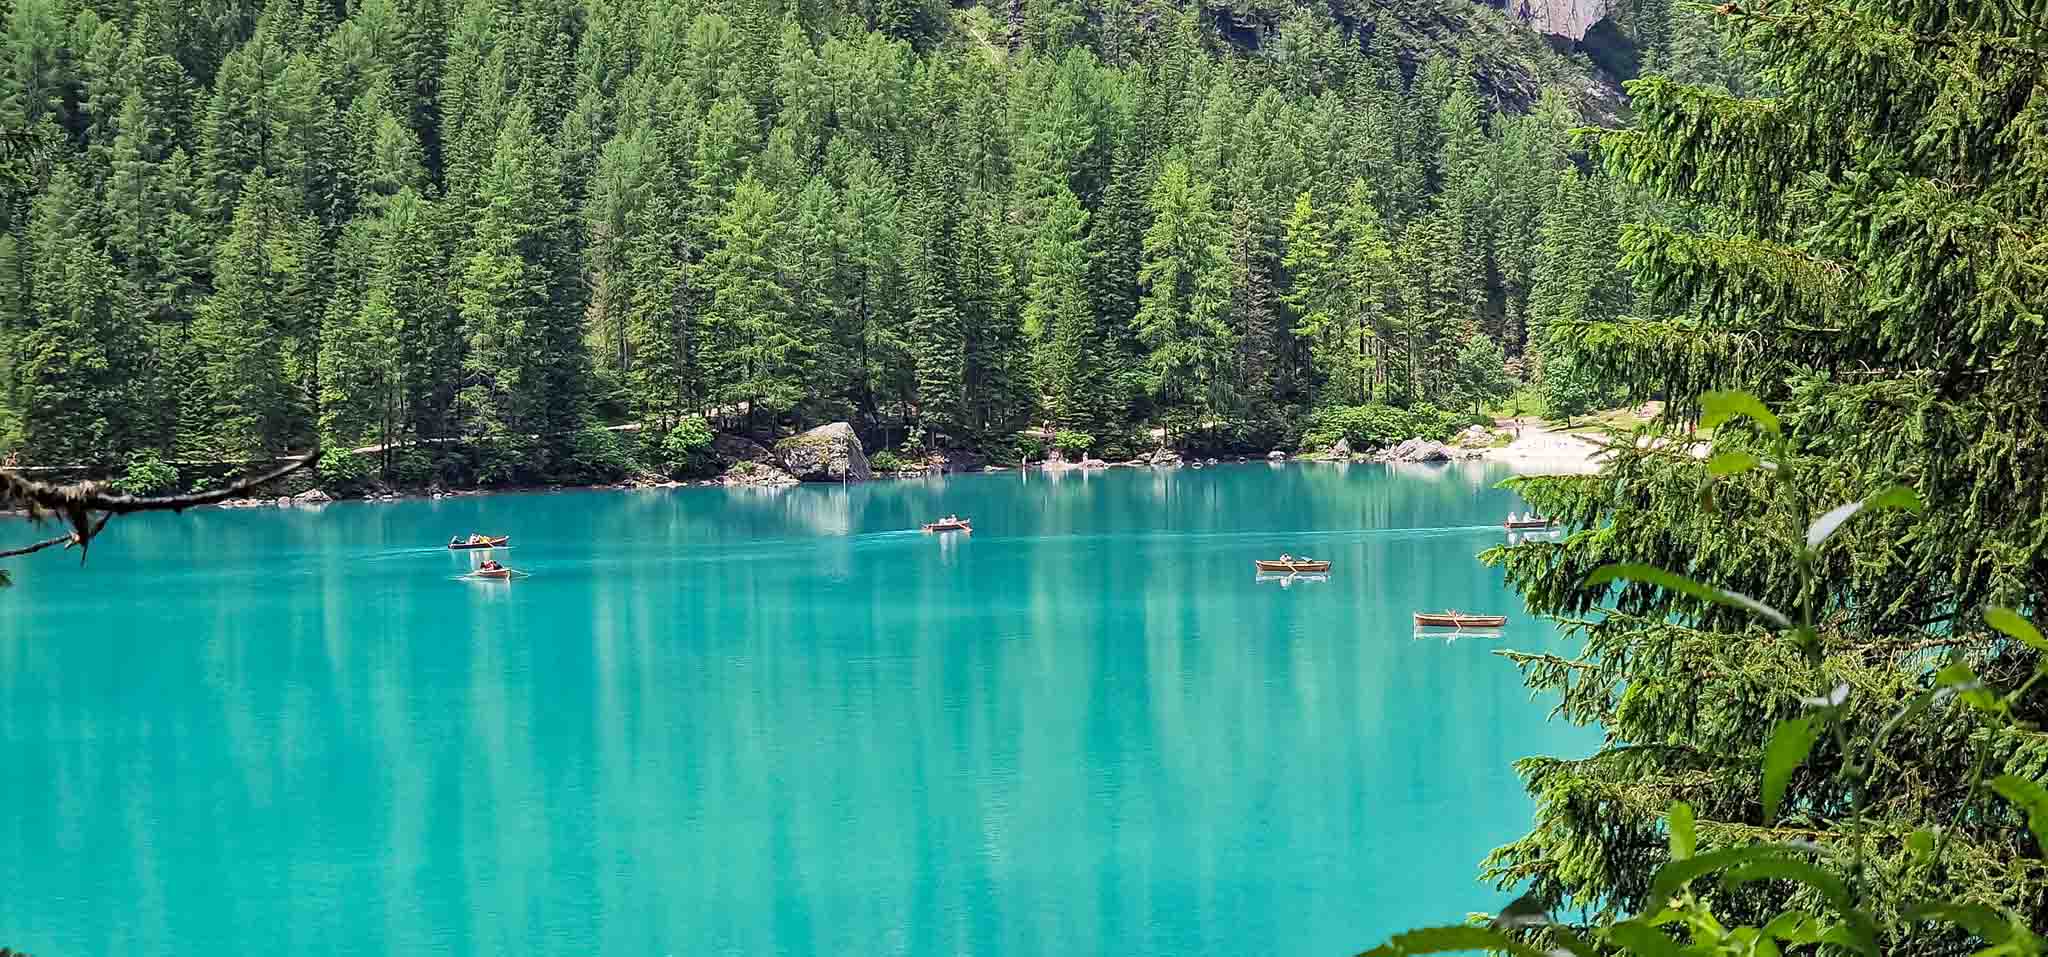 Lago di Braies, hồ nước xanh biếc ở miền Bắc nước Ý